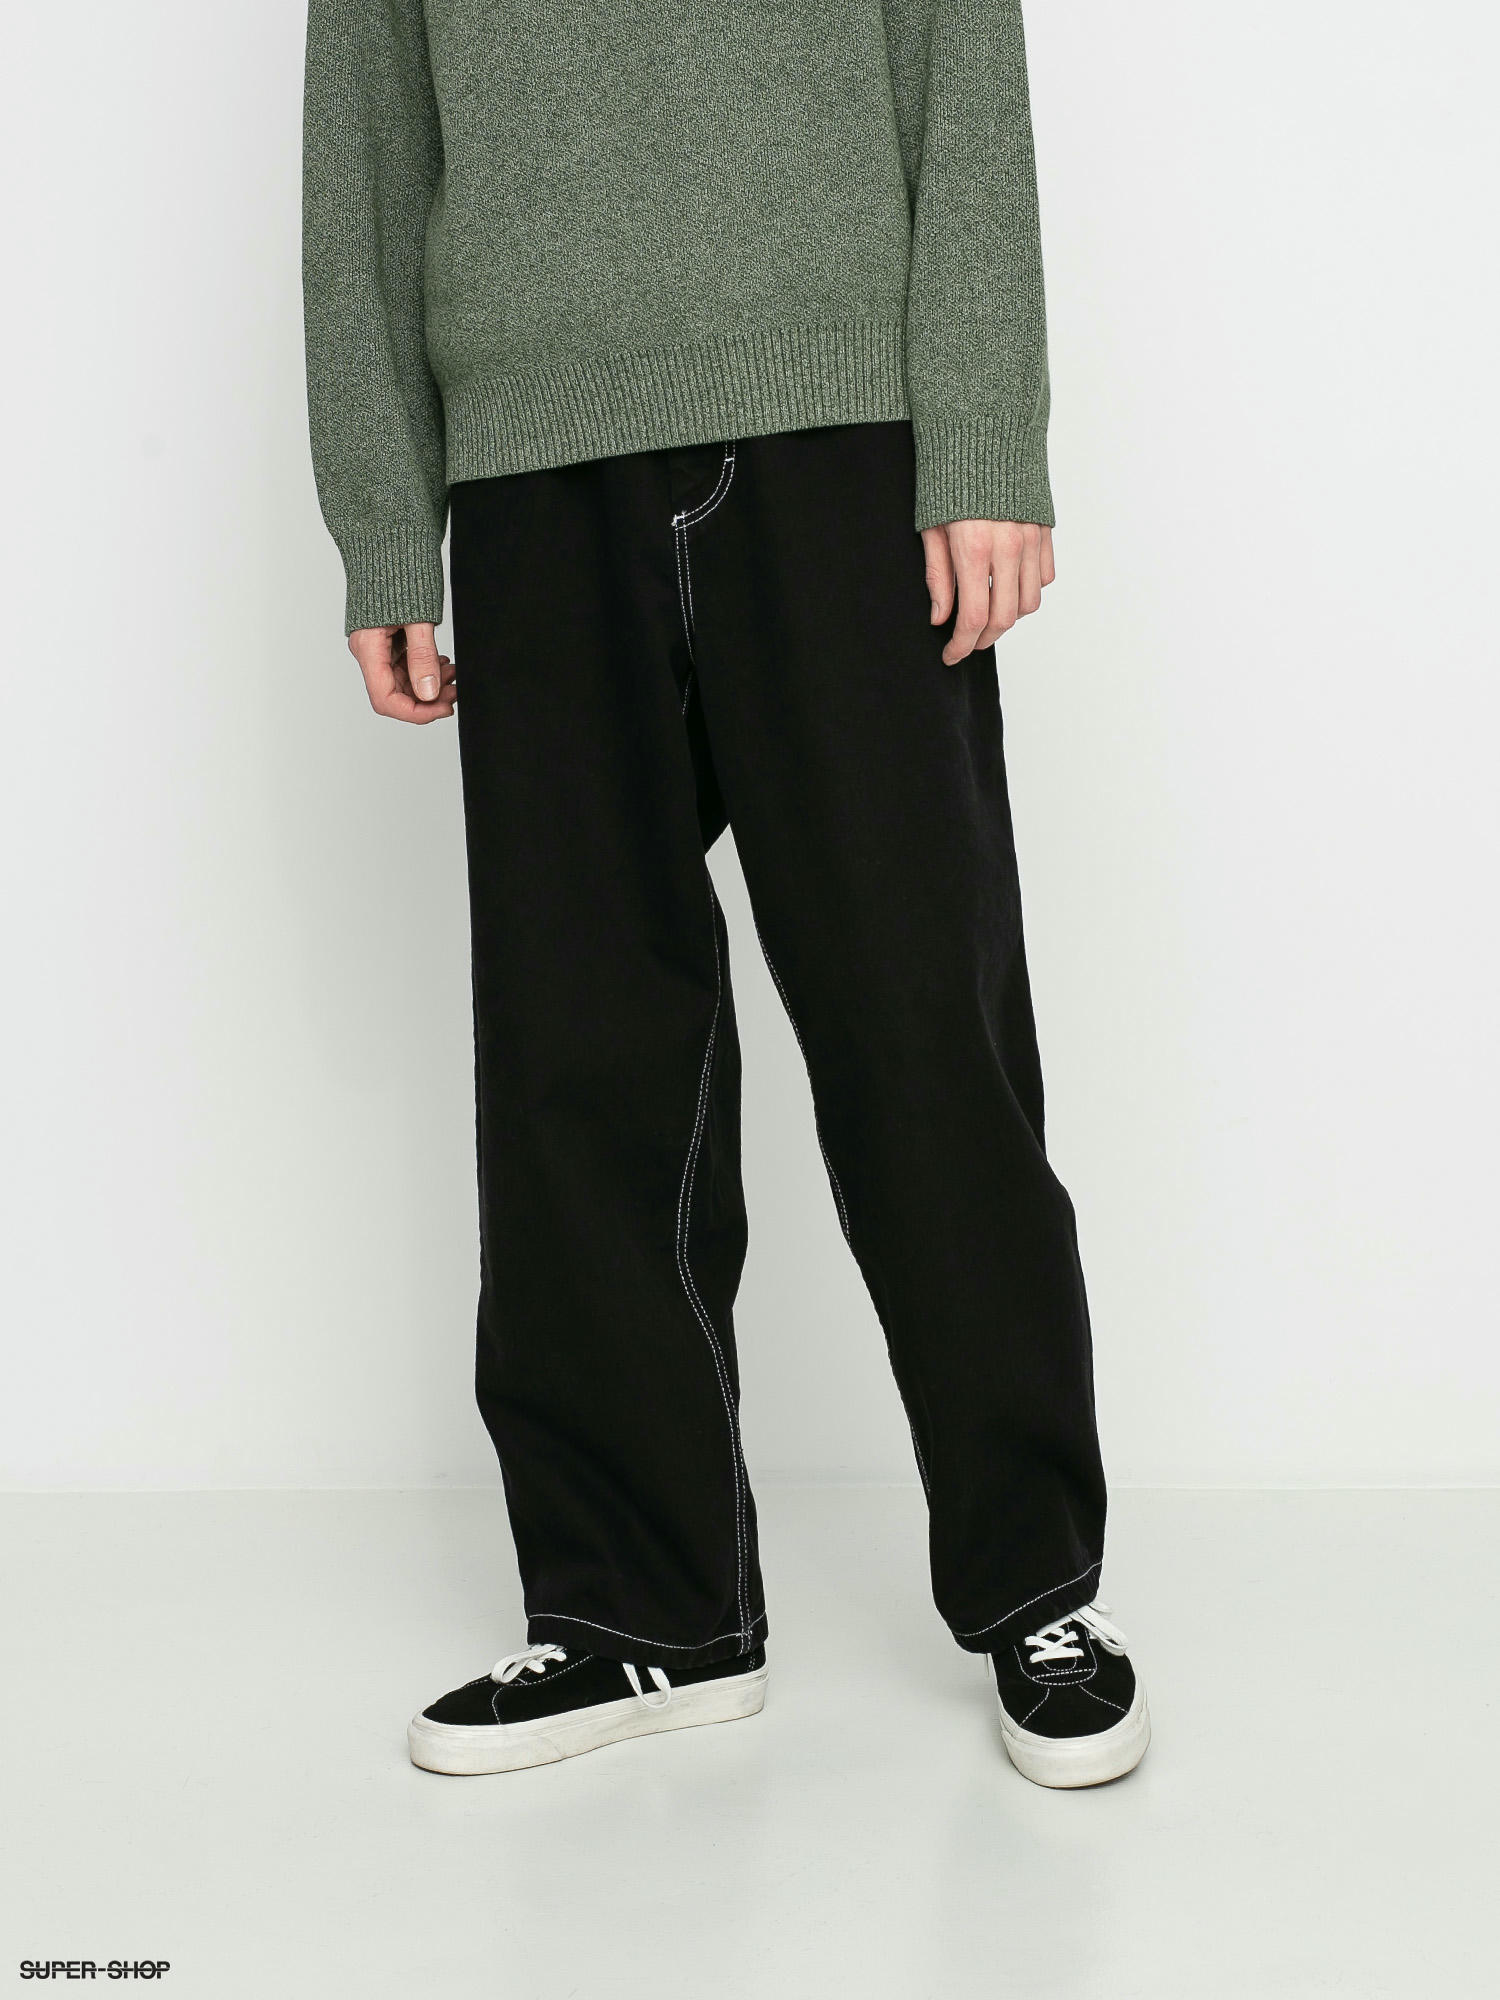 Gini & Jony Boys Black Trouser 13-14 Years : Amazon.in: Fashion